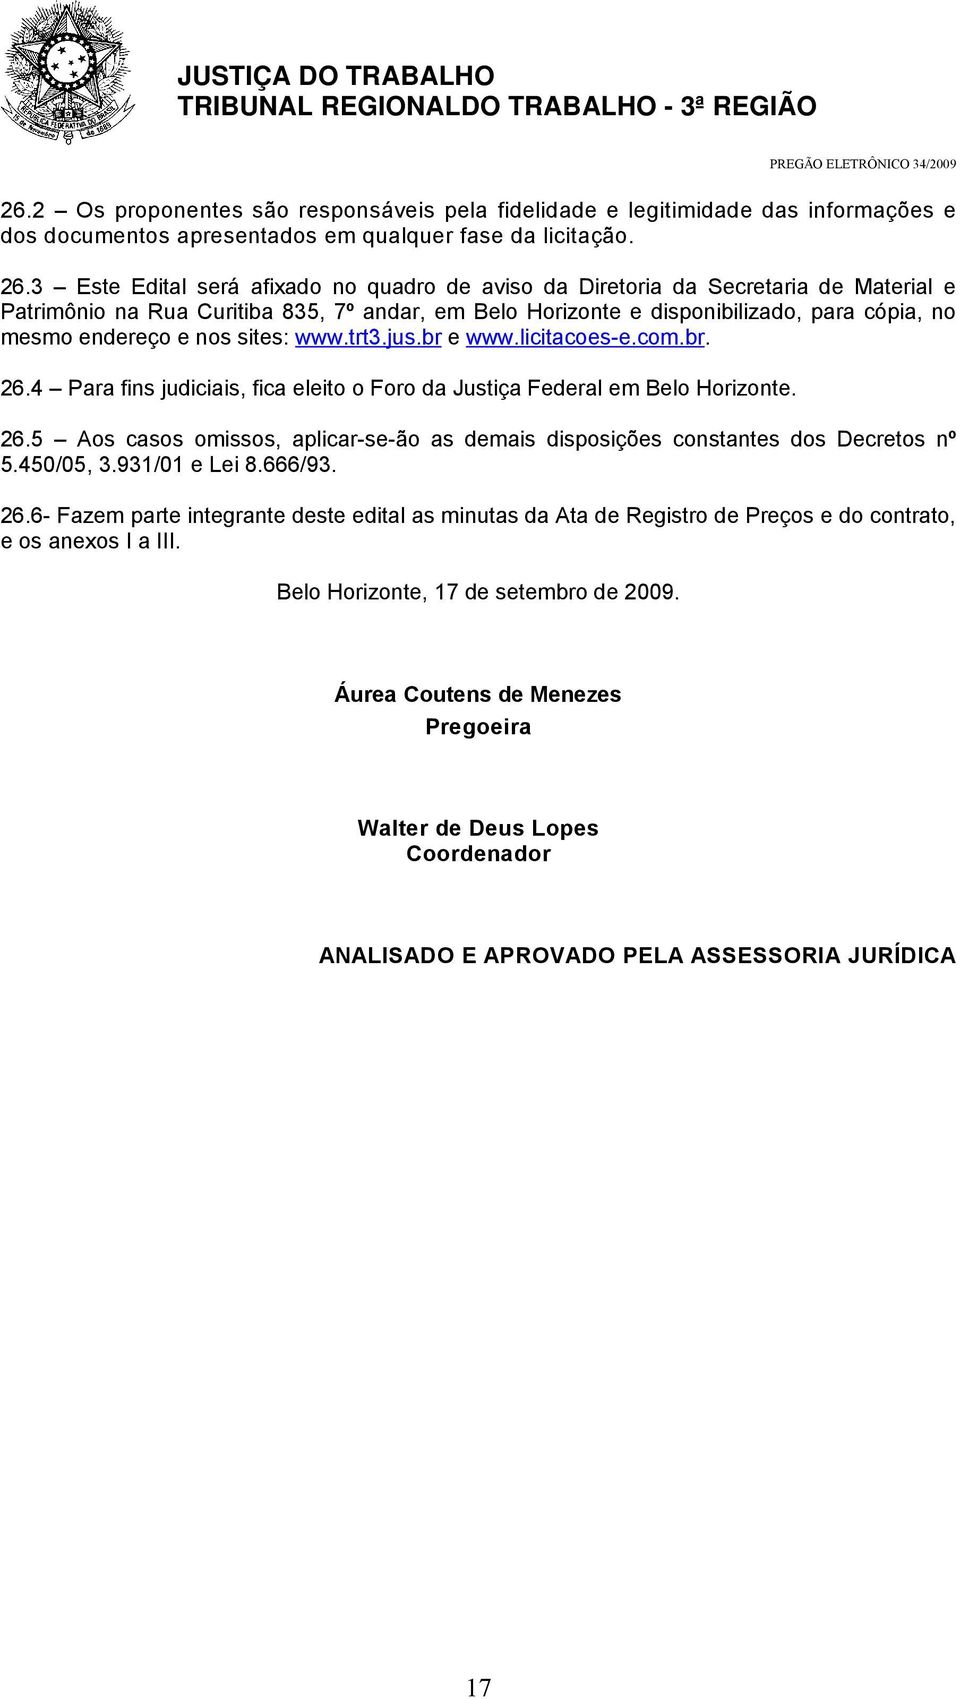 nos sites: www.trt3.jus.br e www.licitacoes-e.com.br. 26.4 Para fins judiciais, fica eleito o Foro da Justiça Federal em Belo Horizonte. 26.5 Aos casos omissos, aplicar-se-ão as demais disposições constantes dos Decretos nº 5.